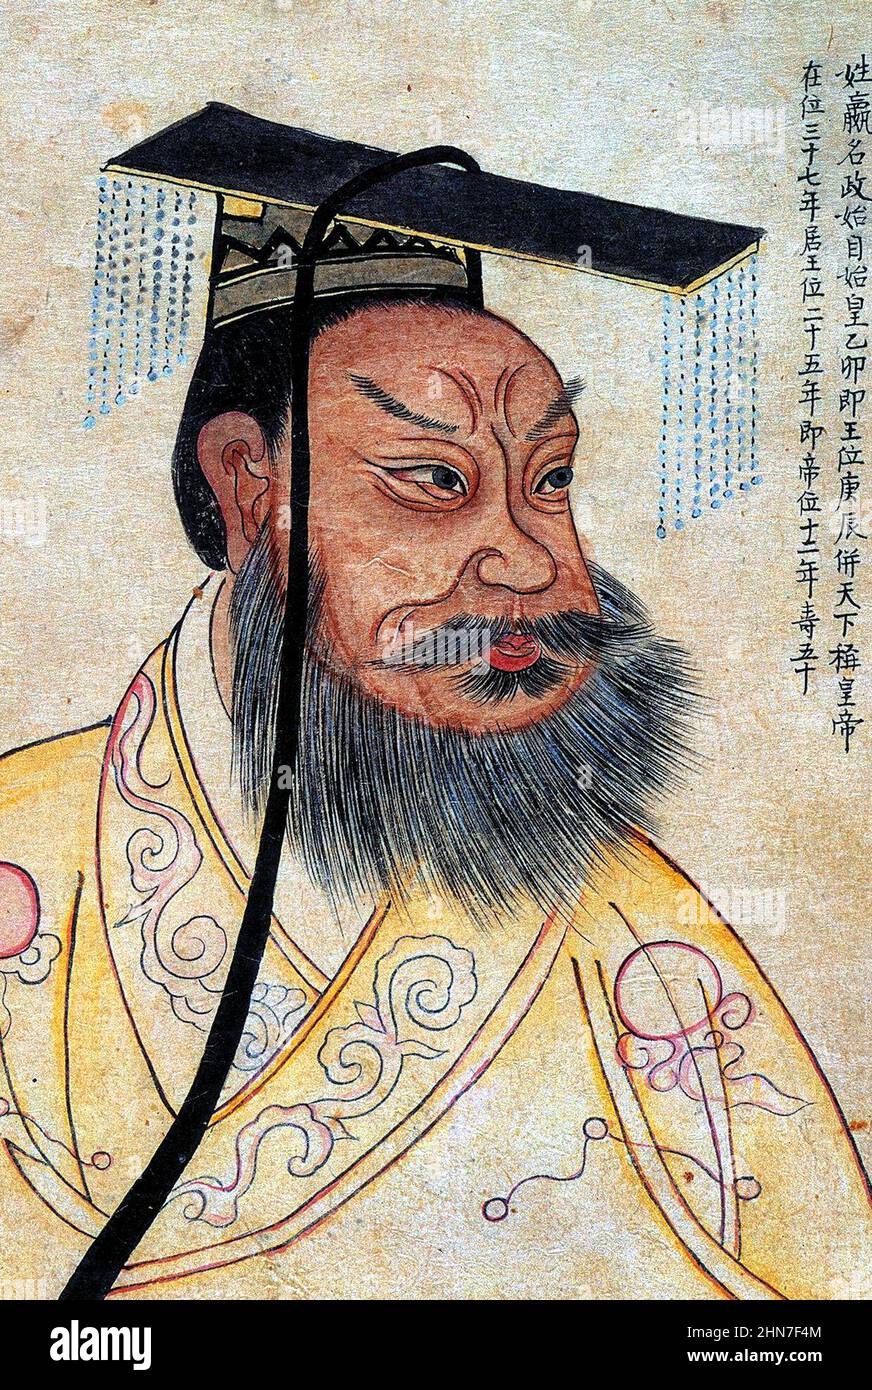 Qin Shi Huang in einem Porträt aus dem 19th. Jahrhundert mit koreanischen Kolophonen in einem Album, das berühmte historische Persönlichkeiten zeigt. Es handelt sich um eine Kopie eines chinesischen Porträts aus dem Jahr 1609 Stockfoto